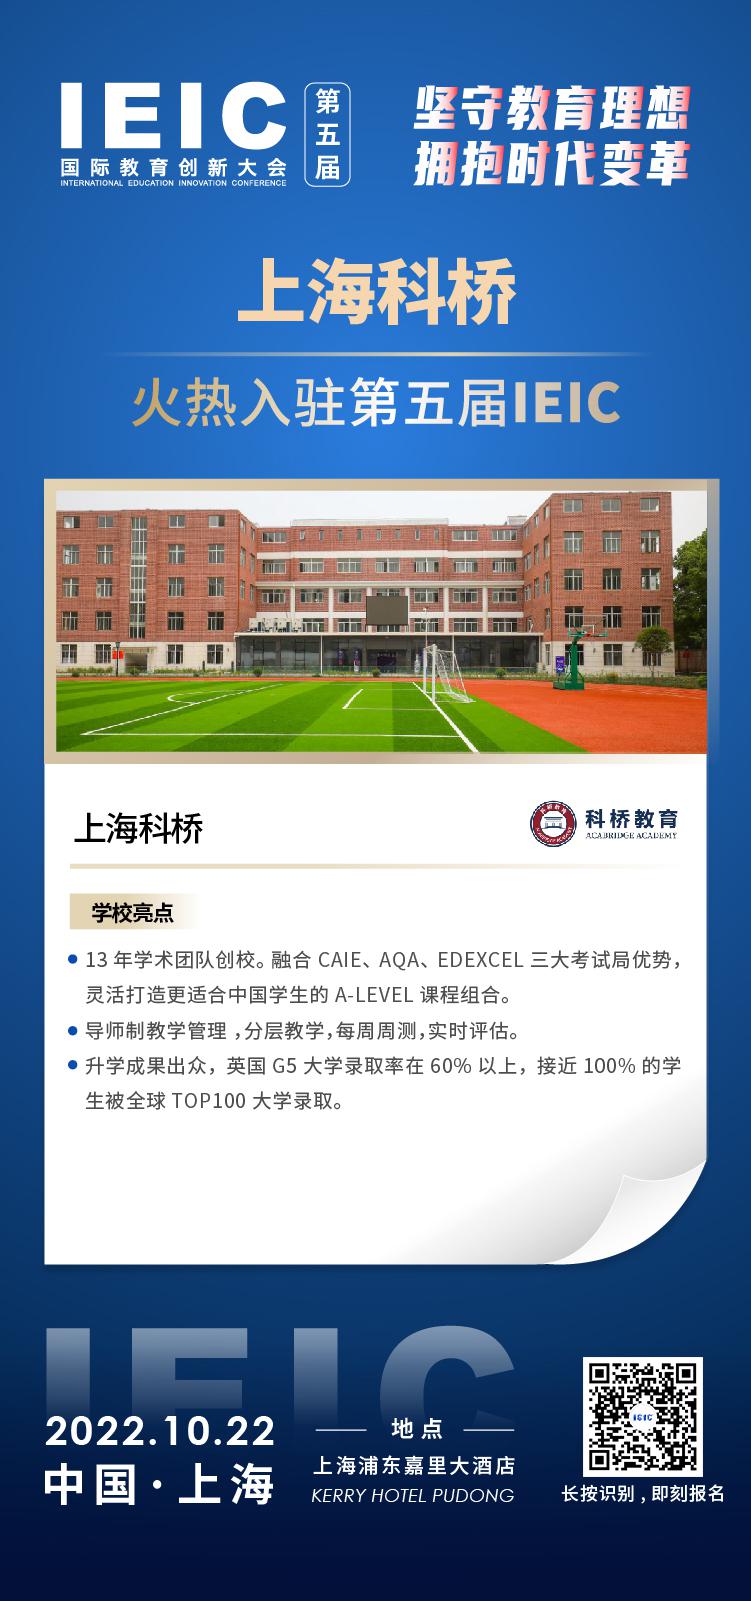 上海科桥教育成功入驻参加2022年远播第五届IEIC国际教育创新大会